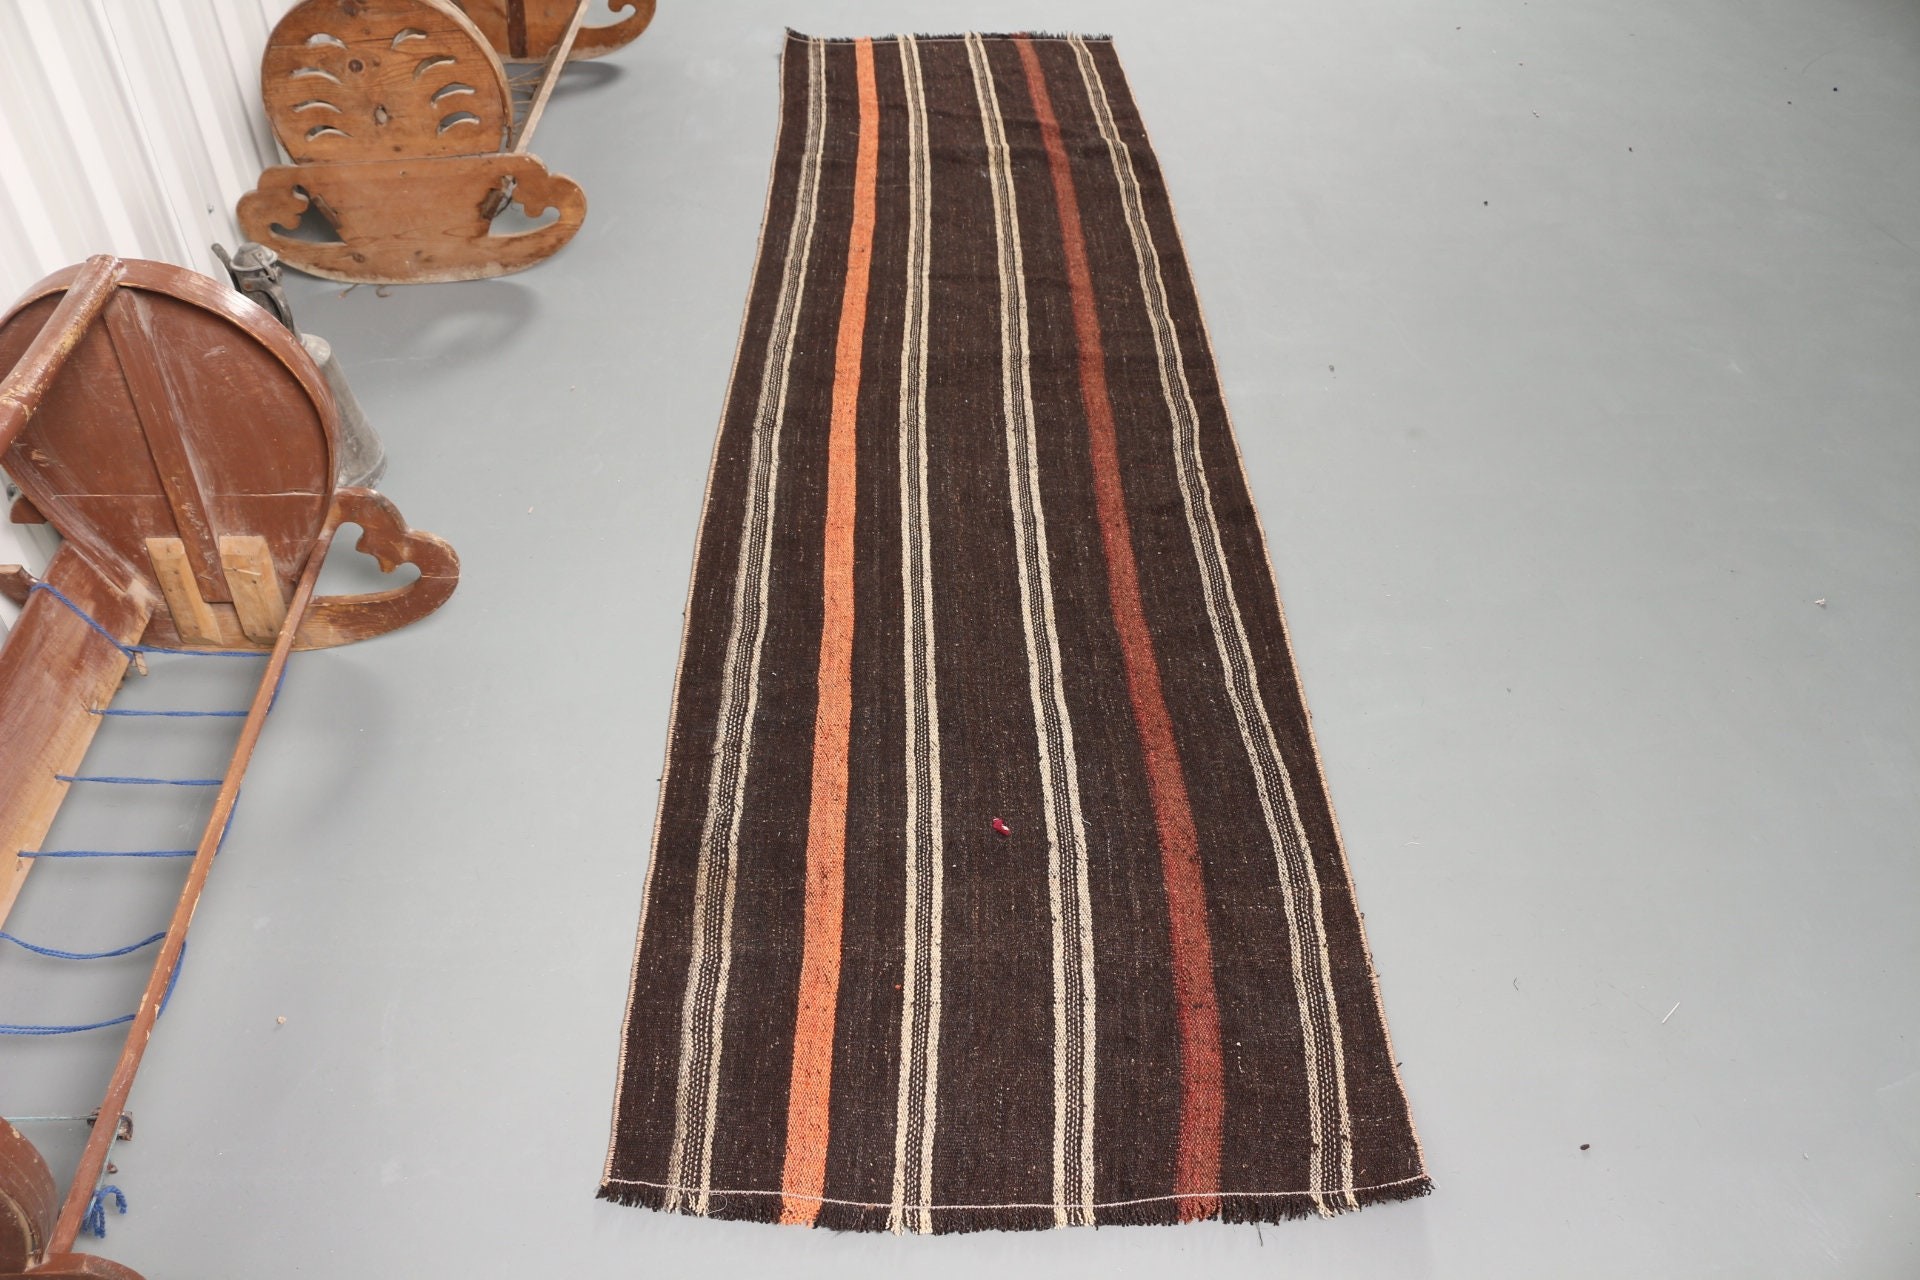 Kilim, Oriental Rug, Corridor Rug, Vintage Rugs, Turkish Rug, 2.4x8.8 ft Runner Rug, Antique Rugs, Stair Rugs, Black Oushak Rug, Turkey Rug